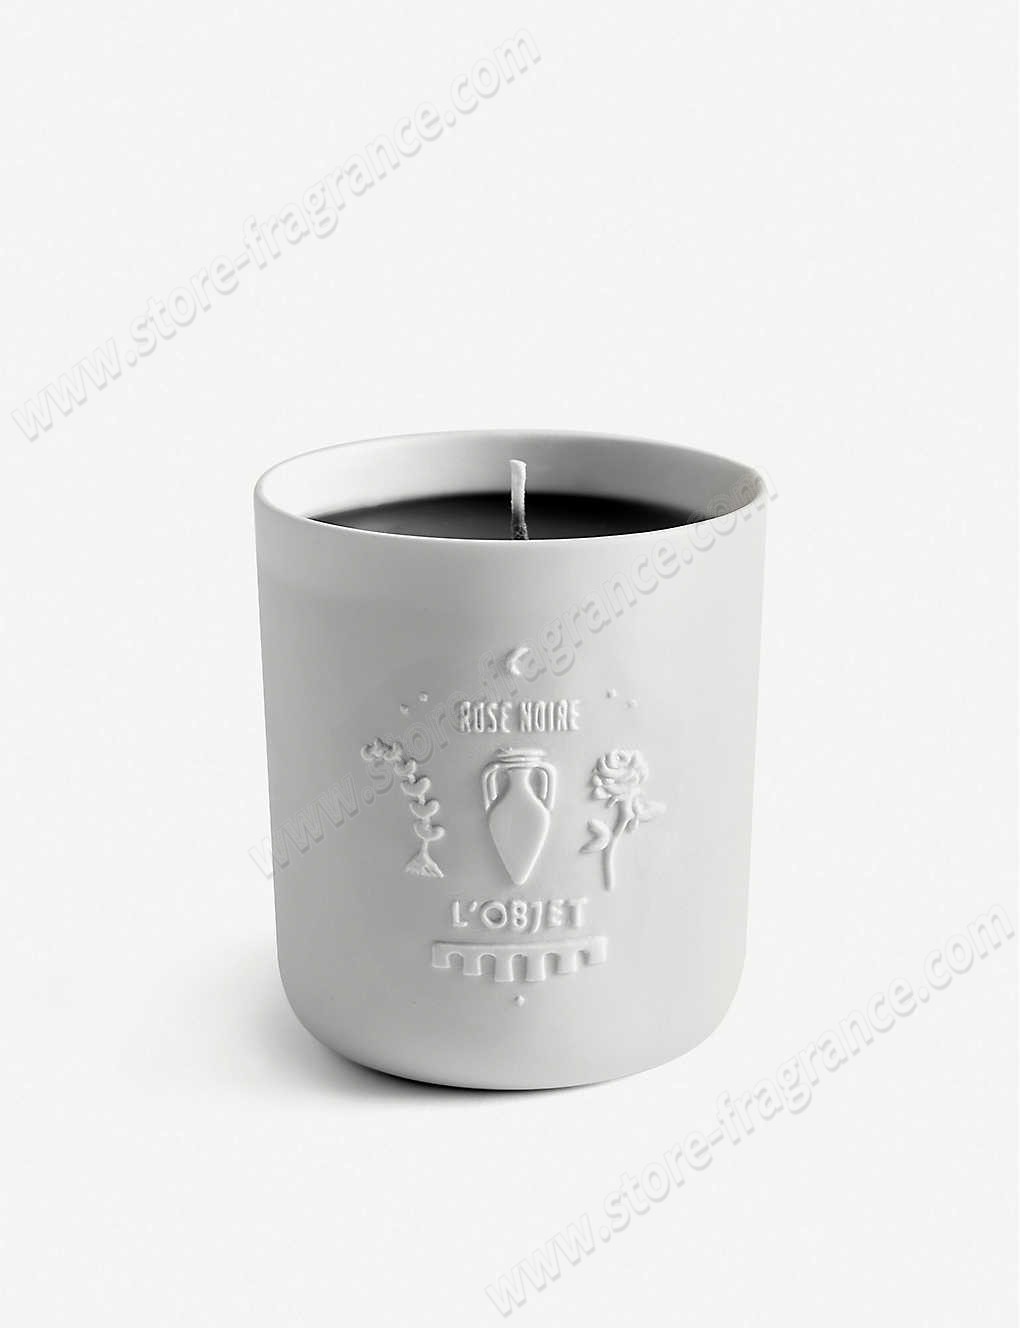 L'OBJET/Rose Noir candle 285g ✿ Discount Store - L'OBJET/Rose Noir candle 285g ✿ Discount Store